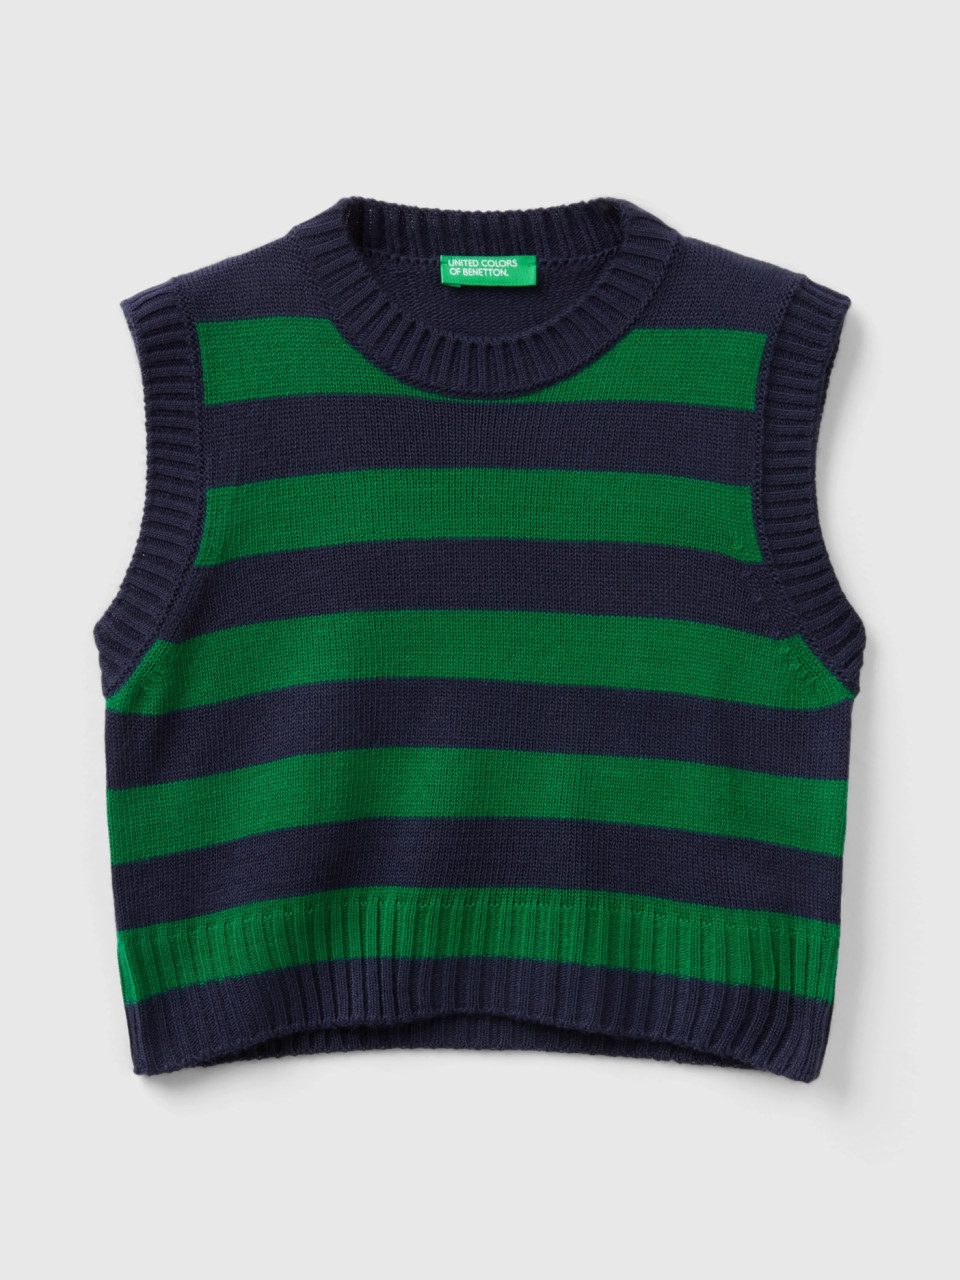 Benetton, Two-tone Striped Vest, Multi-color, Kids